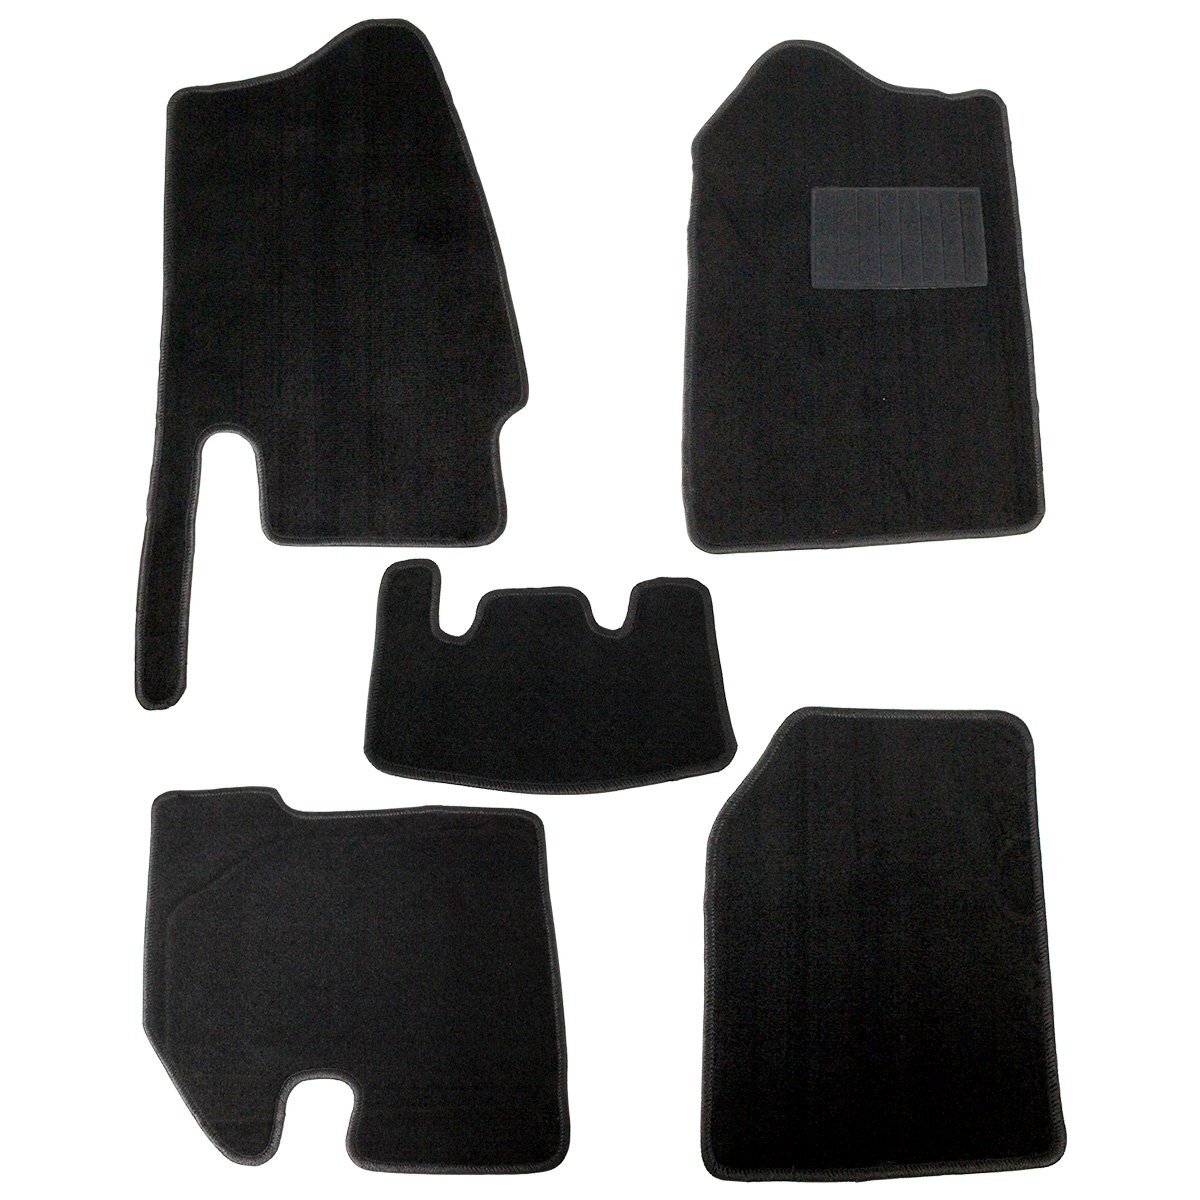  марка машины специальный Jimny JA11 MT машина для водительское сиденье & пассажирское сиденье & после часть сиденье 5PCS комплект коврик на пол пол сиденье чёрный бриллиант передний задний 